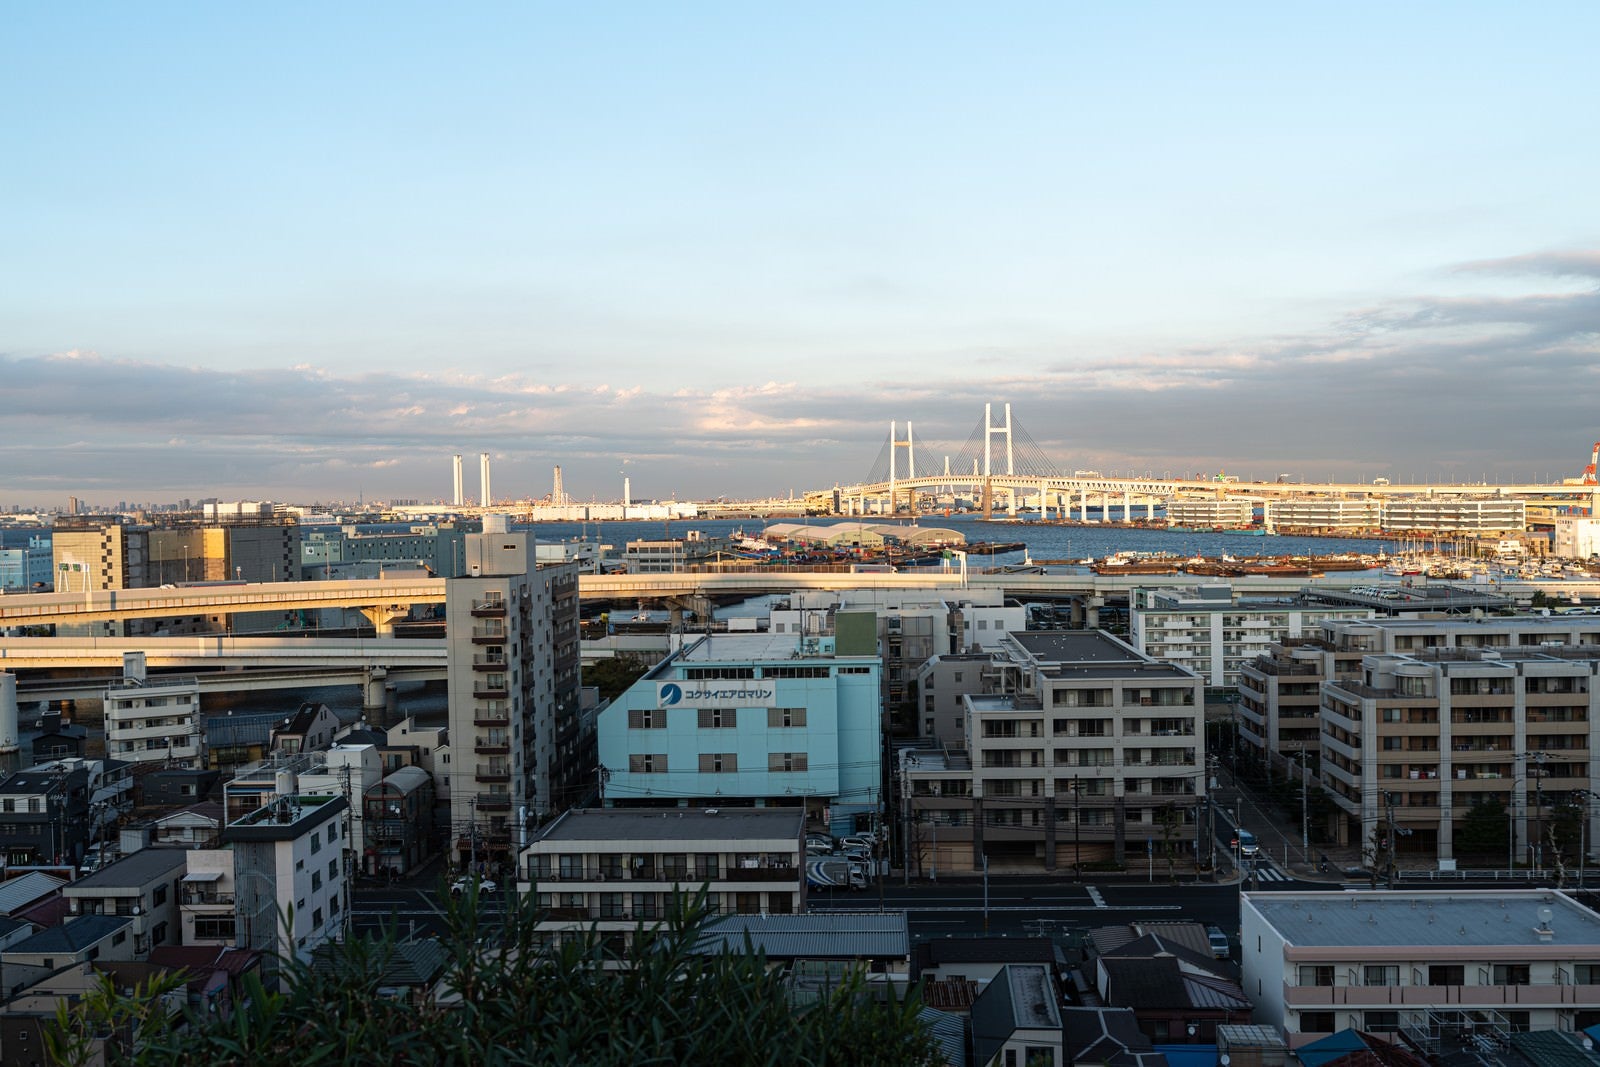 「港の見える丘公園からの街並みと埠頭」の写真